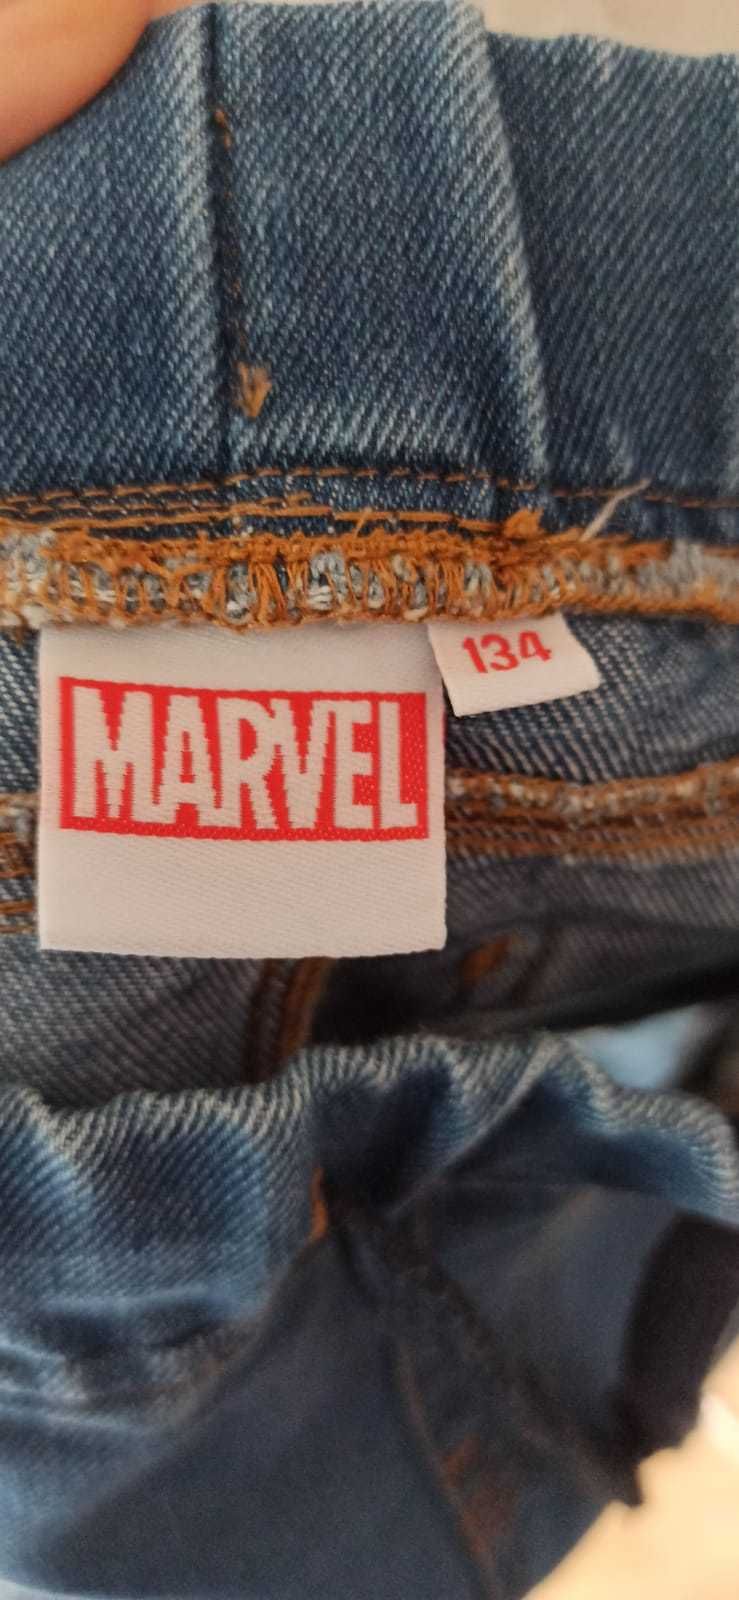 Pantaloni scurti copii - Marvel | Marimea 34